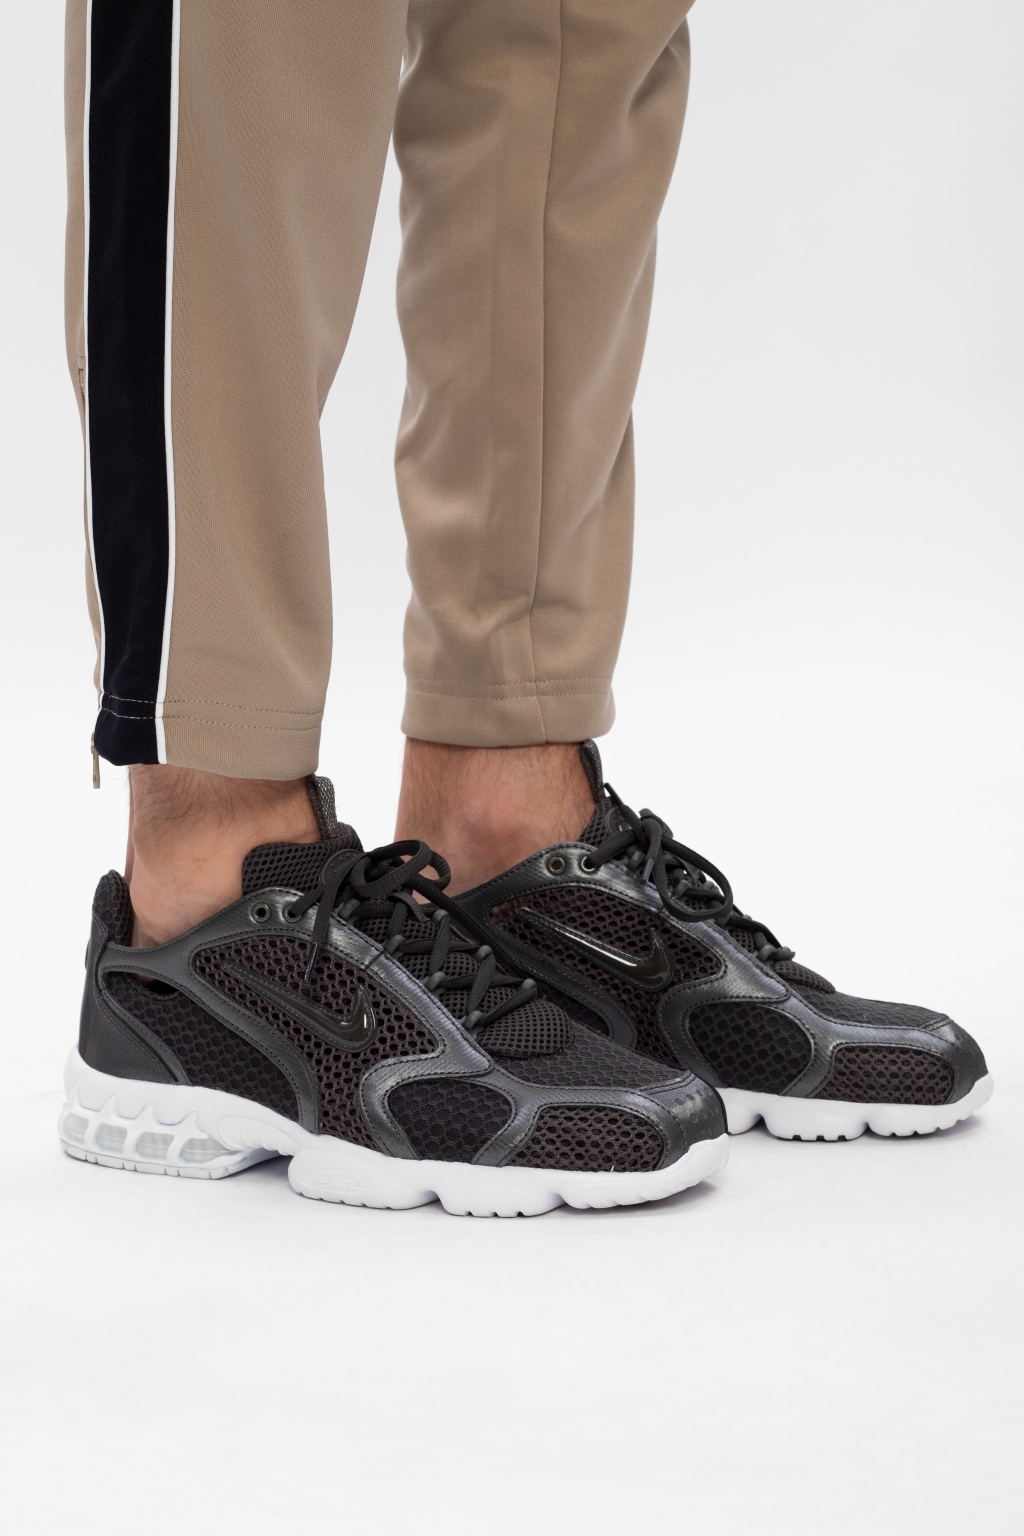 Nike 'Air Zoom Spiridon Cage 2' | Men's Shoes | Vitkac